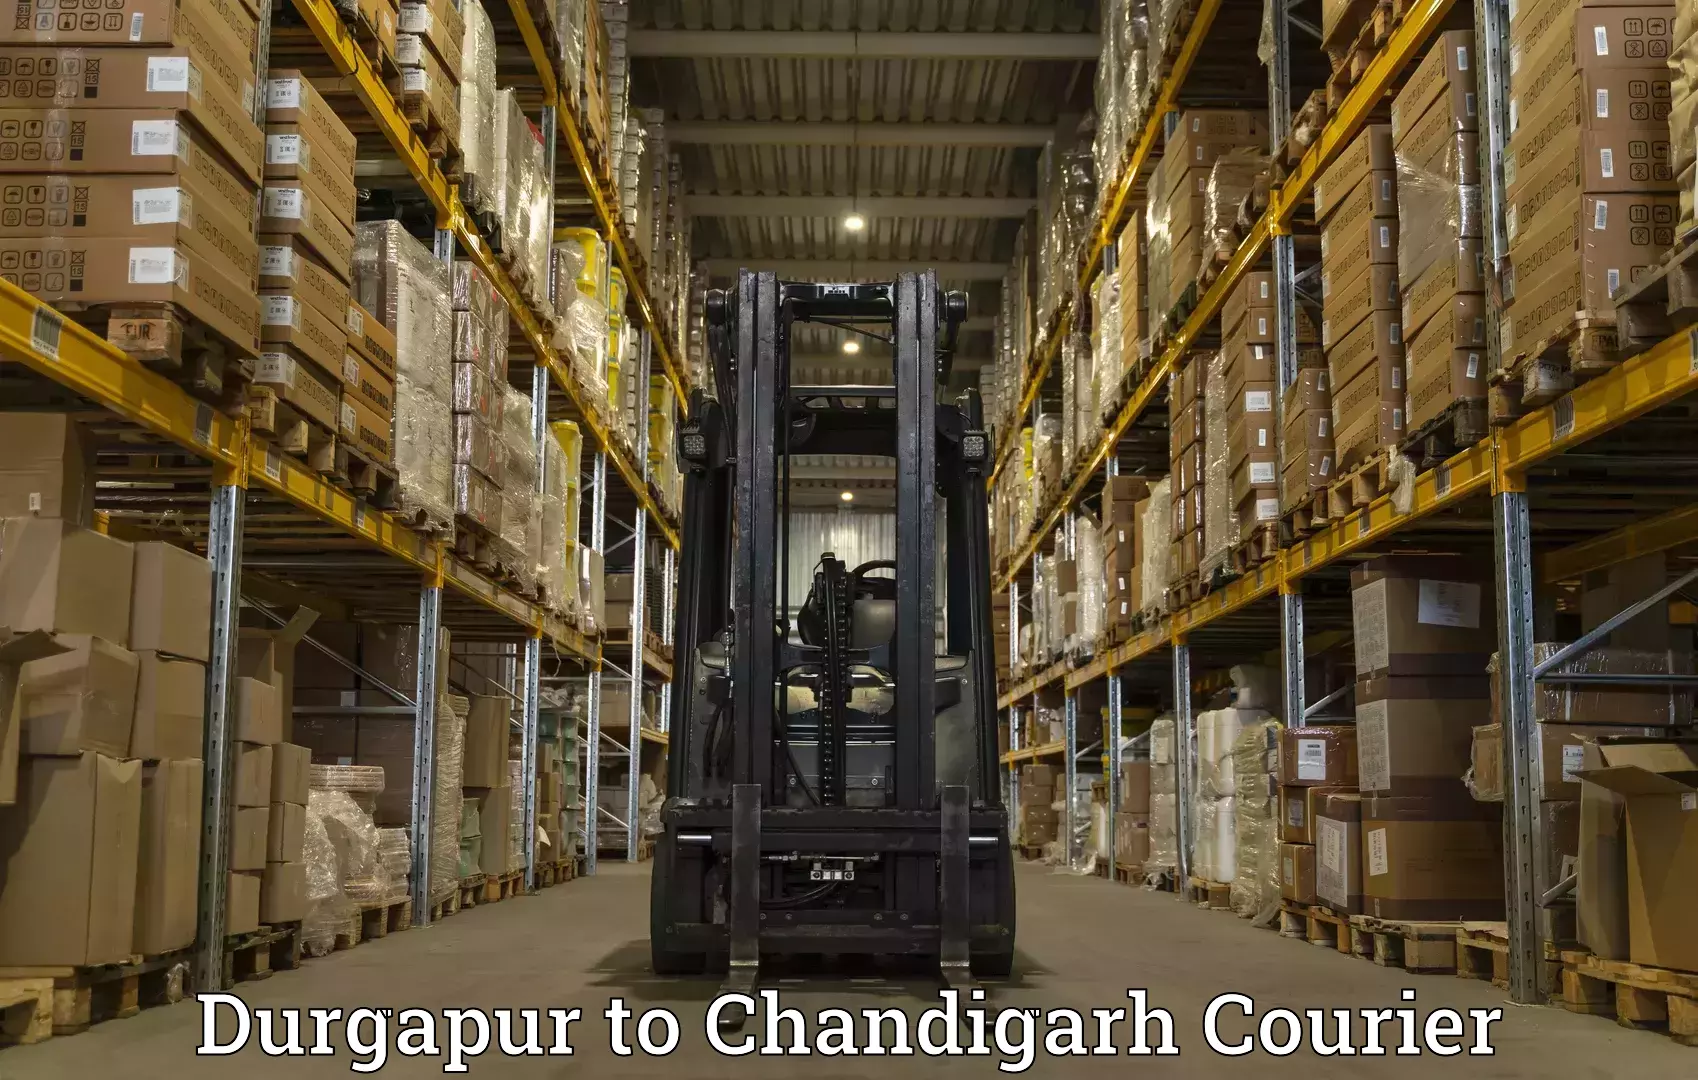 International courier networks Durgapur to Chandigarh